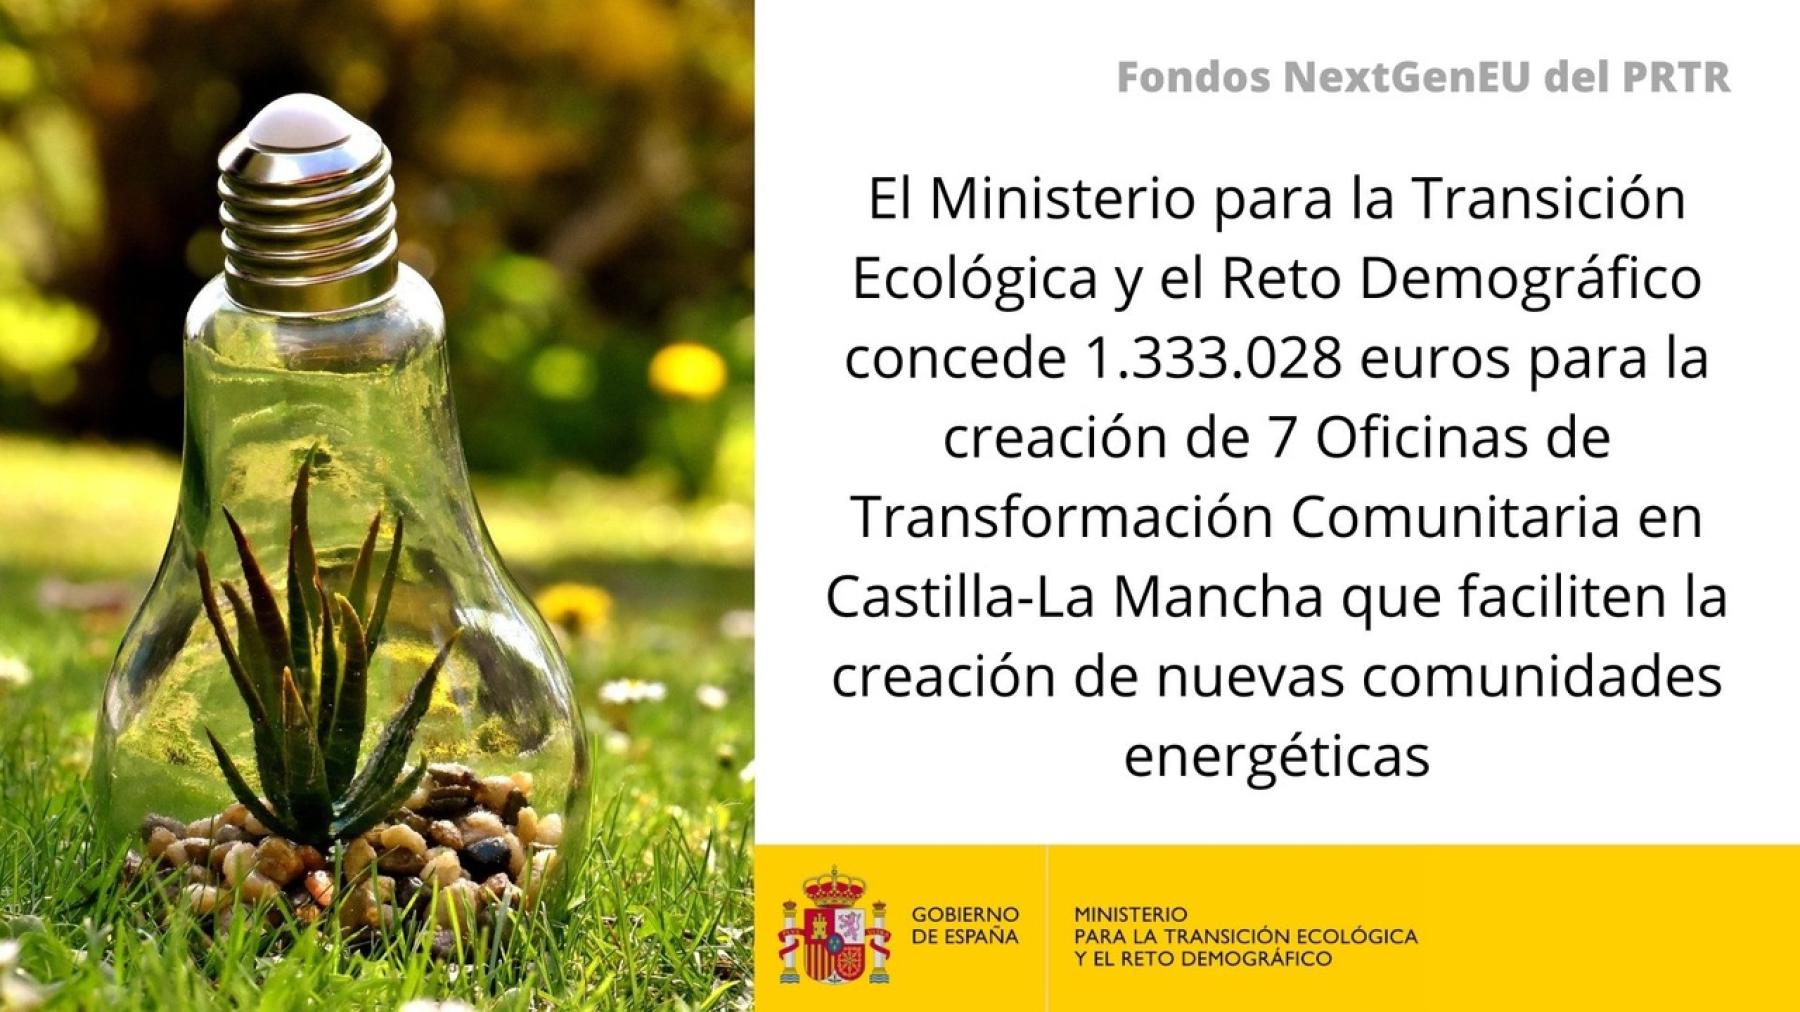 El MITECO concede 1.333.028 euros para la creación de 7 Oficinas de Transformación Comunitaria en Castilla-La Mancha que faciliten la creación de nuevas comunidades energéticas